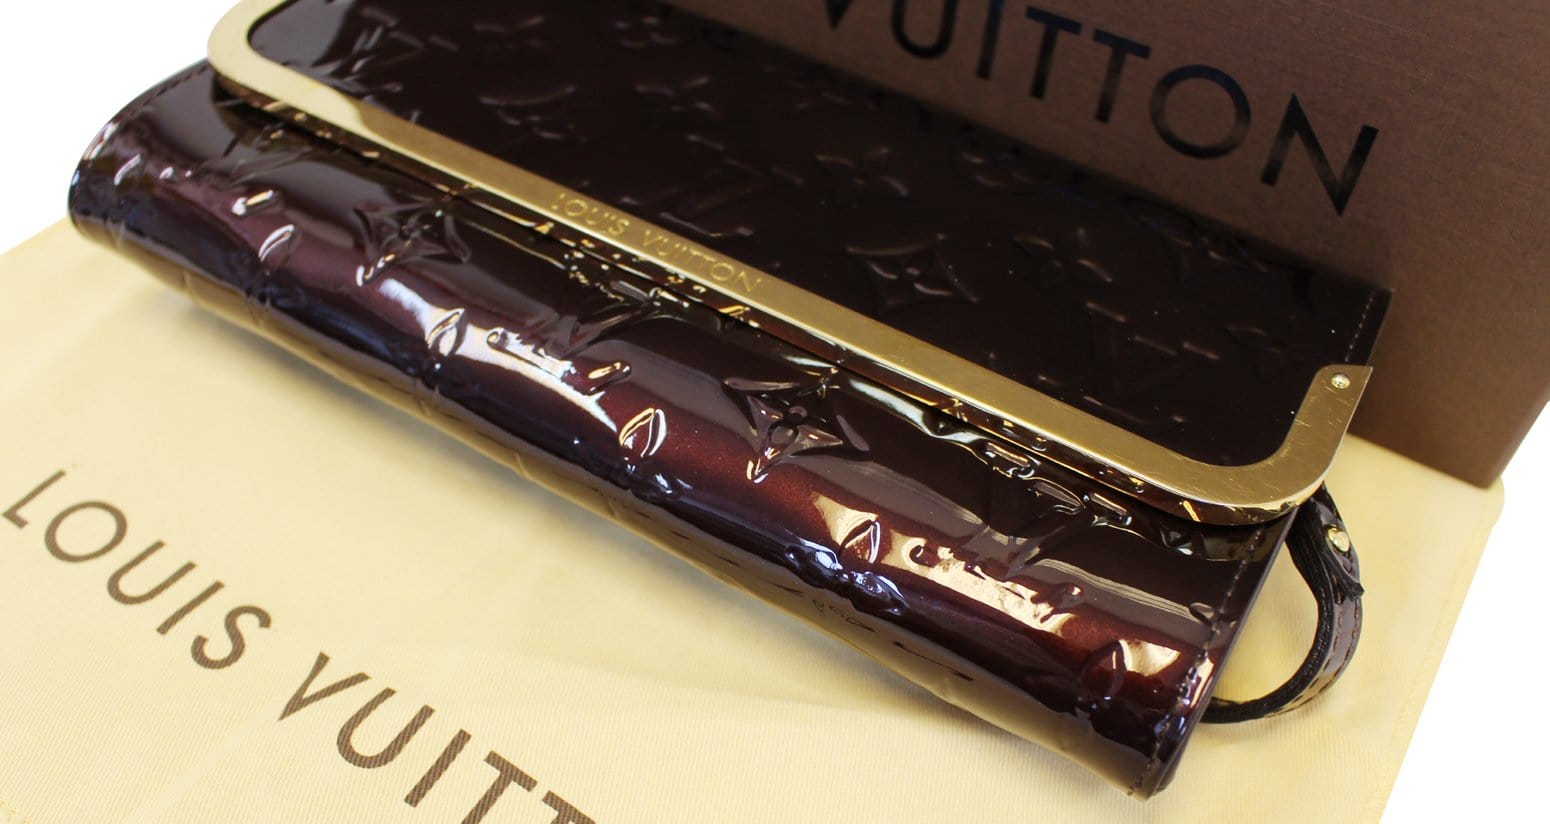 Louis Vuitton - Amarante Monogram Vernis Leather Rossmore Bag